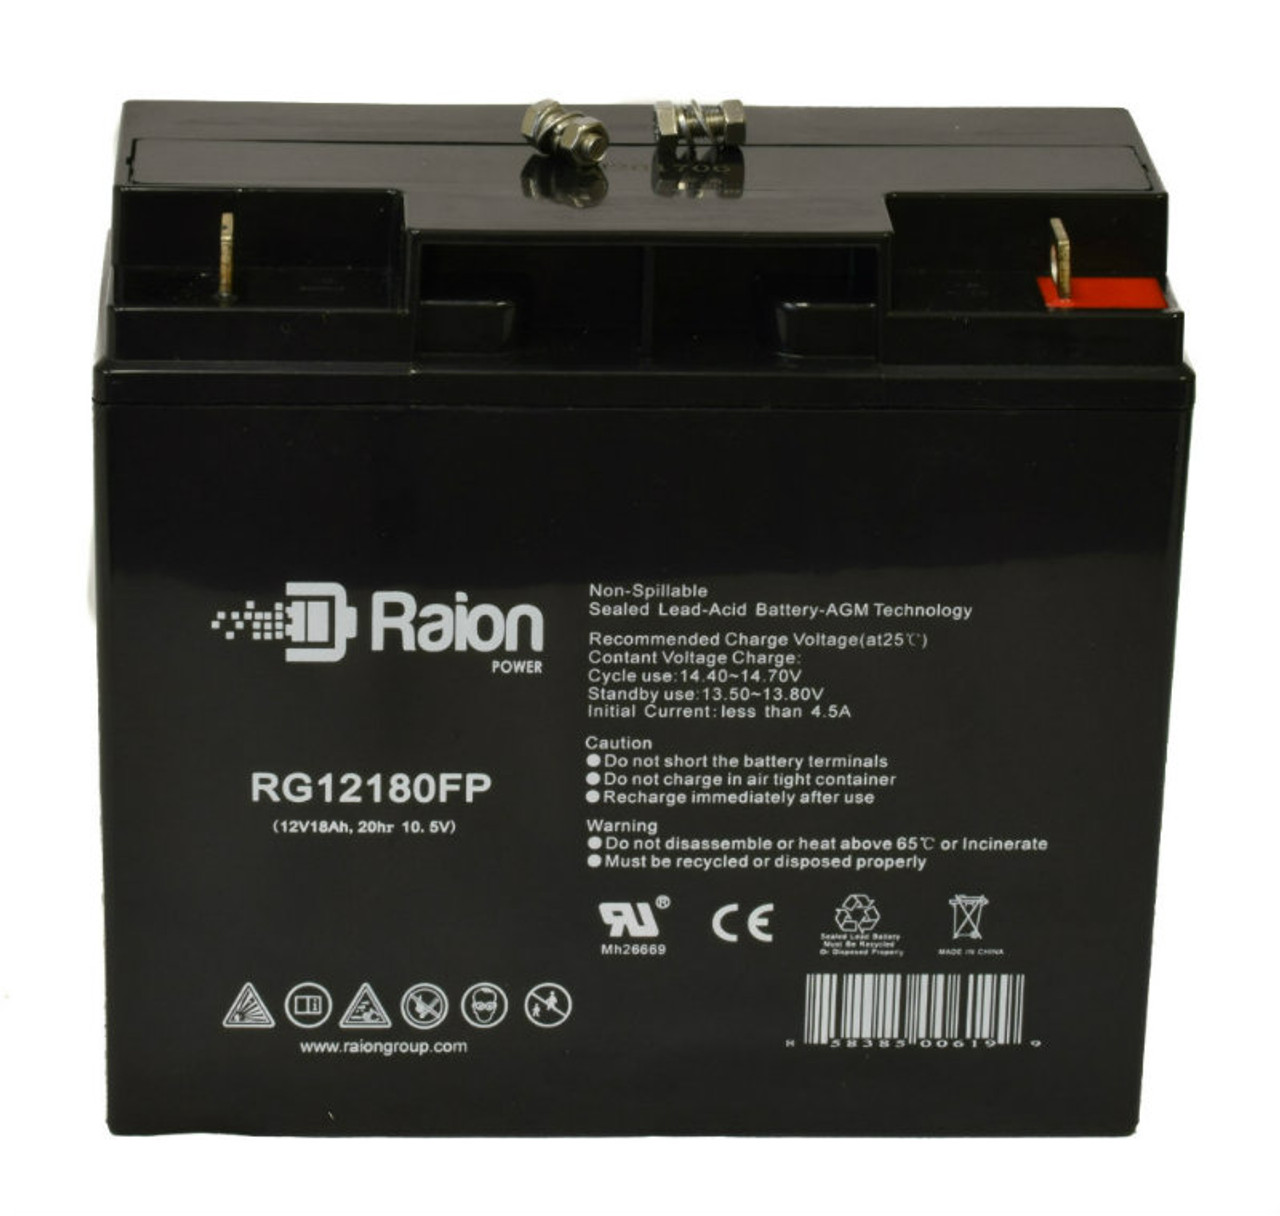 Raion Power RG12180FP 12V 18Ah Lead Acid Battery for IBT Technologies BT18-12